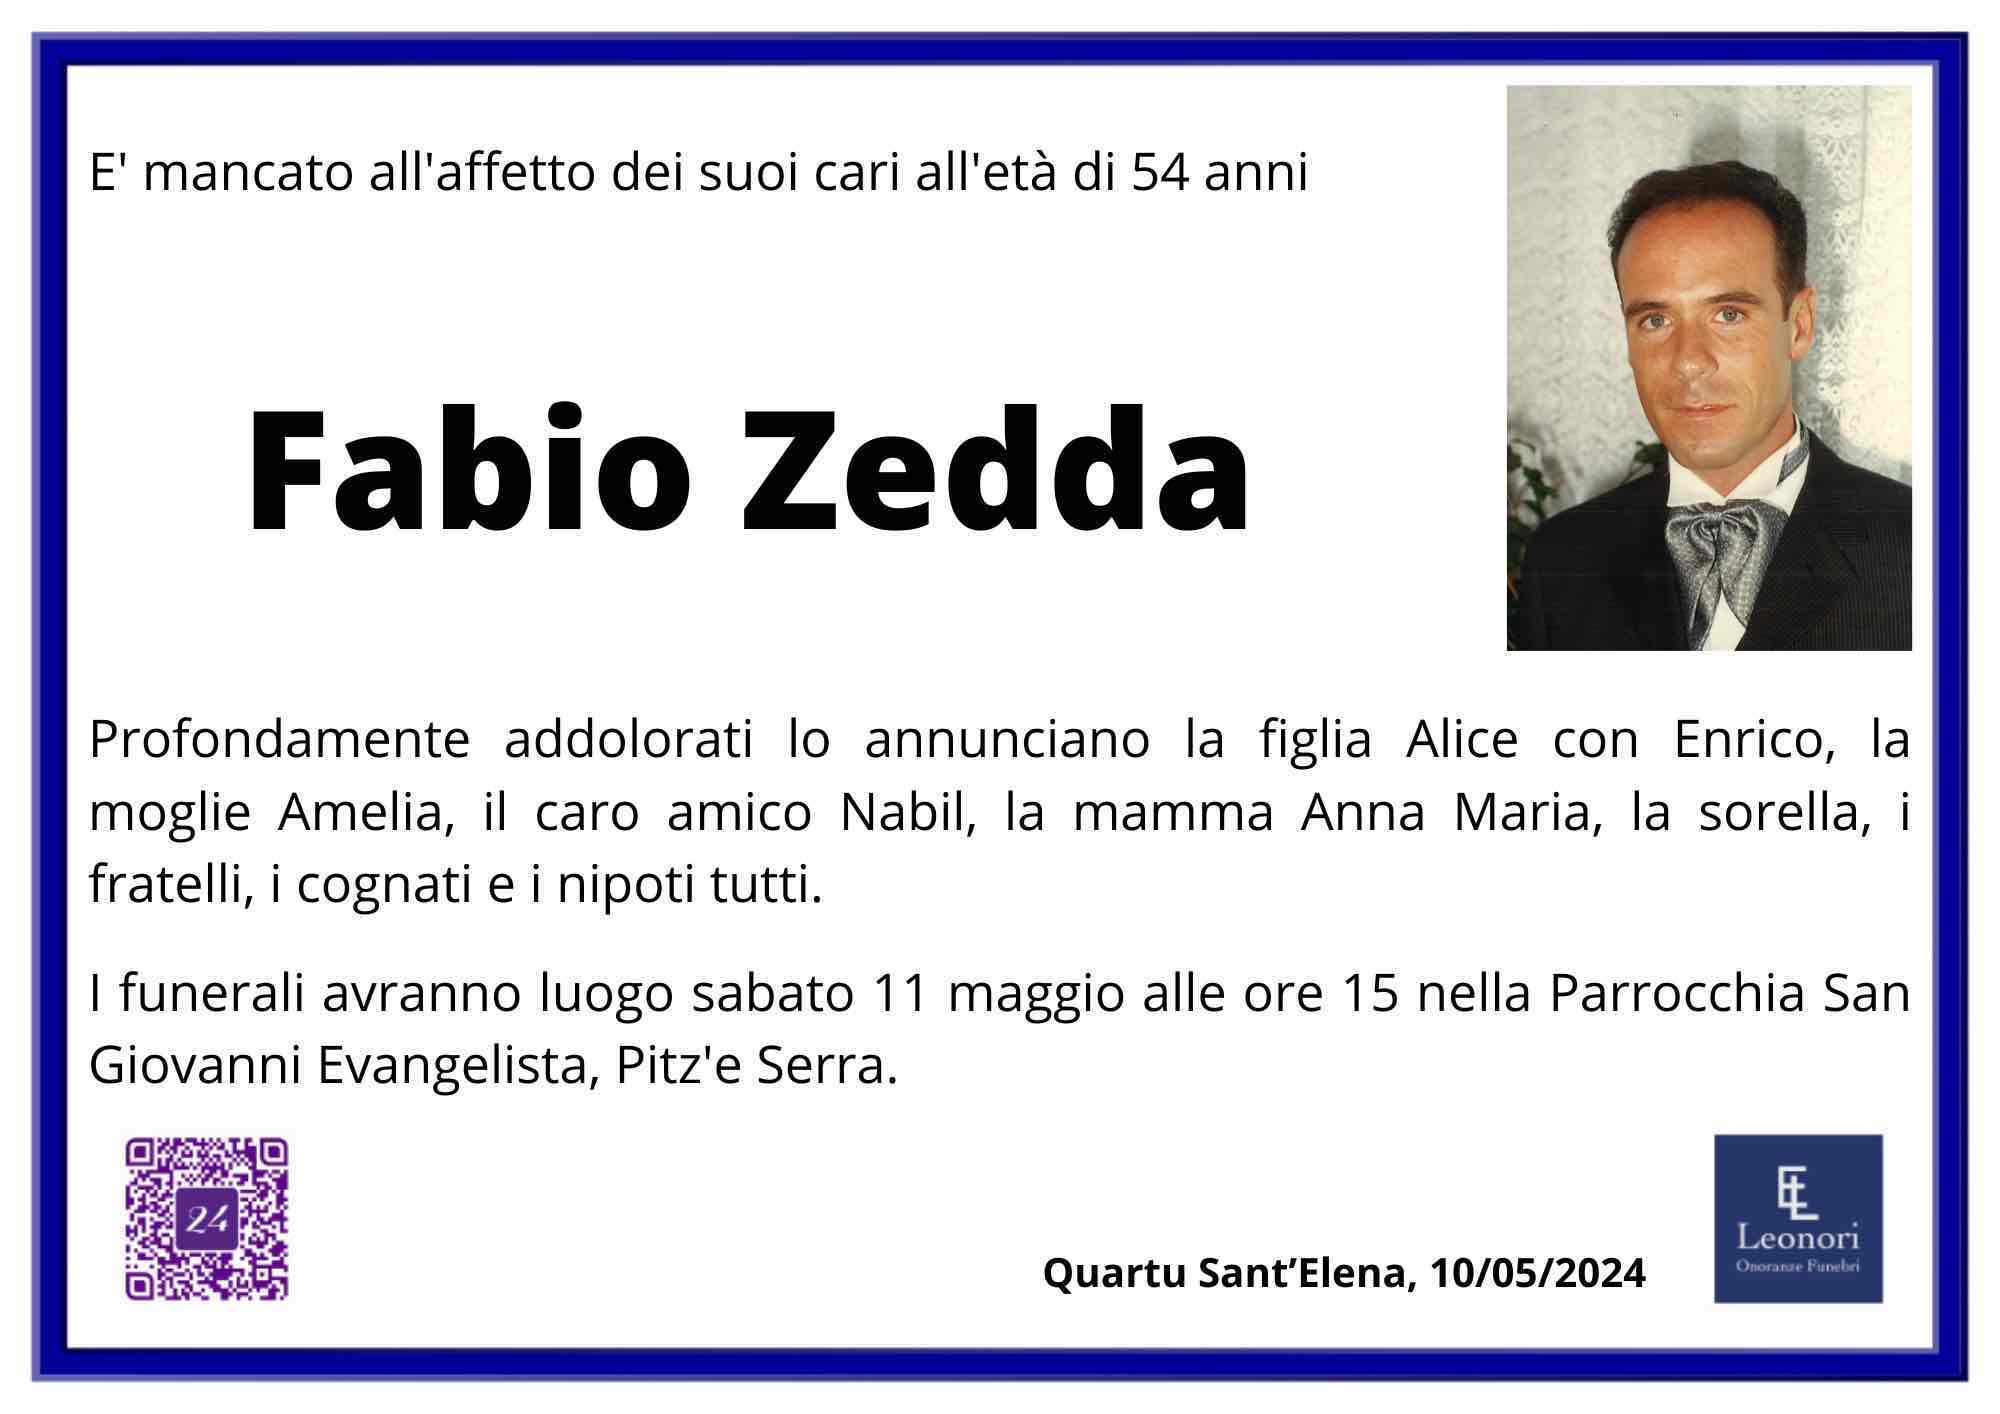 Fabio Zedda